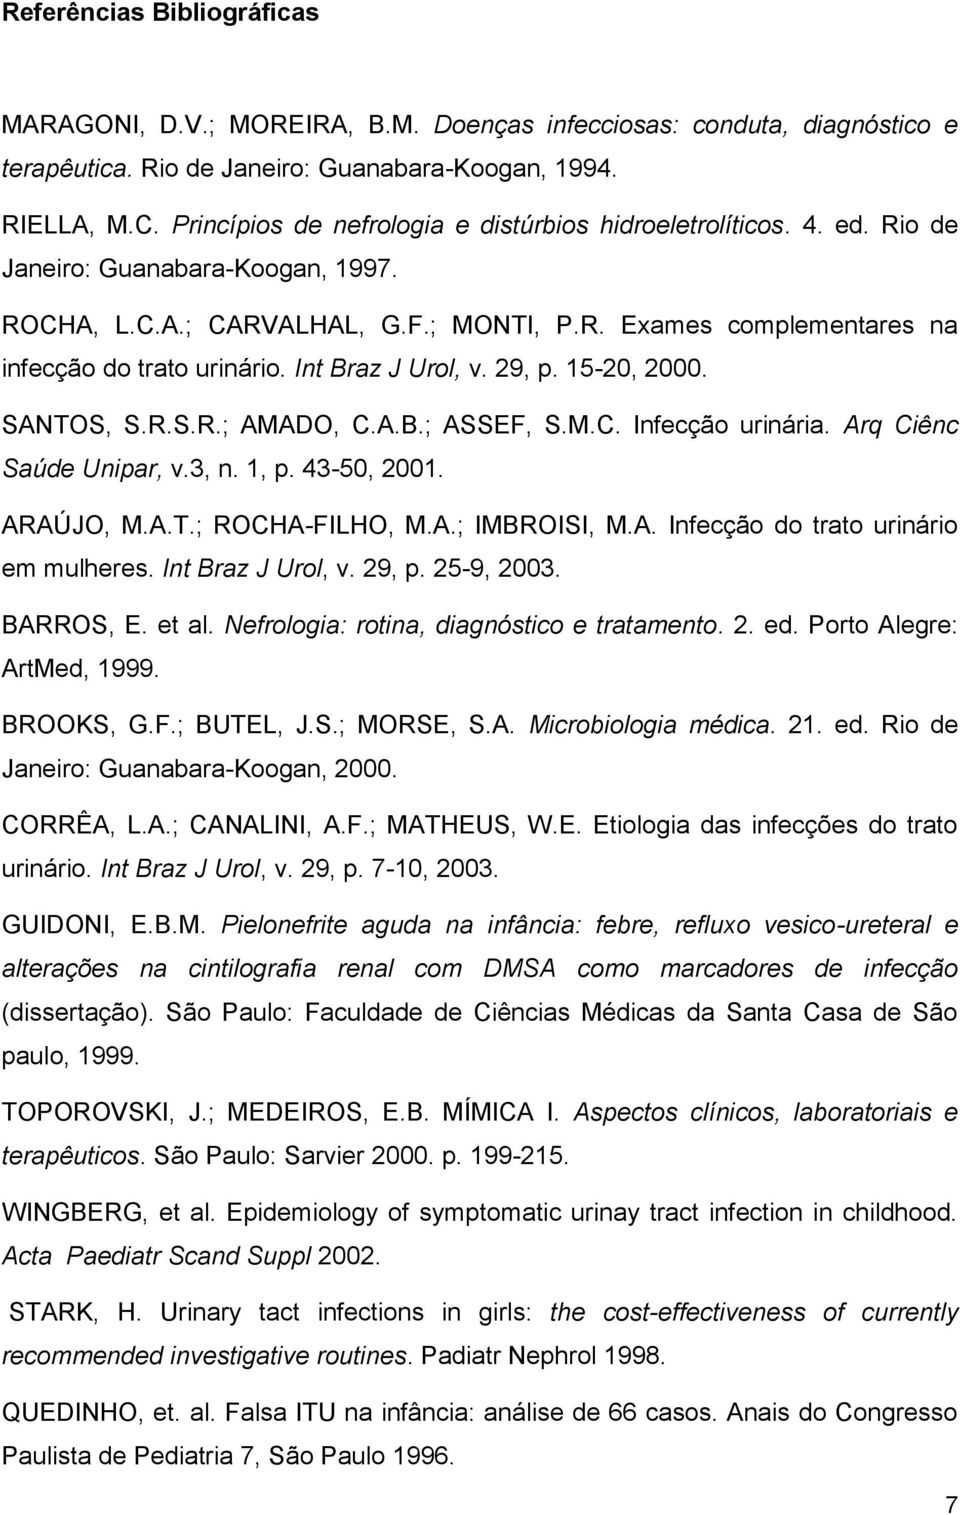 Int Braz J Urol, v. 29, p. 15-20, 2000. SANTOS, S.R.S.R.; AMADO, C.A.B.; ASSEF, S.M.C. Infecção urinária. Arq Ciênc Saúde Unipar, v.3, n. 1, p. 43-50, 2001. ARAÚJO, M.A.T.; ROCHA-FILHO, M.A.; IMBROISI, M.